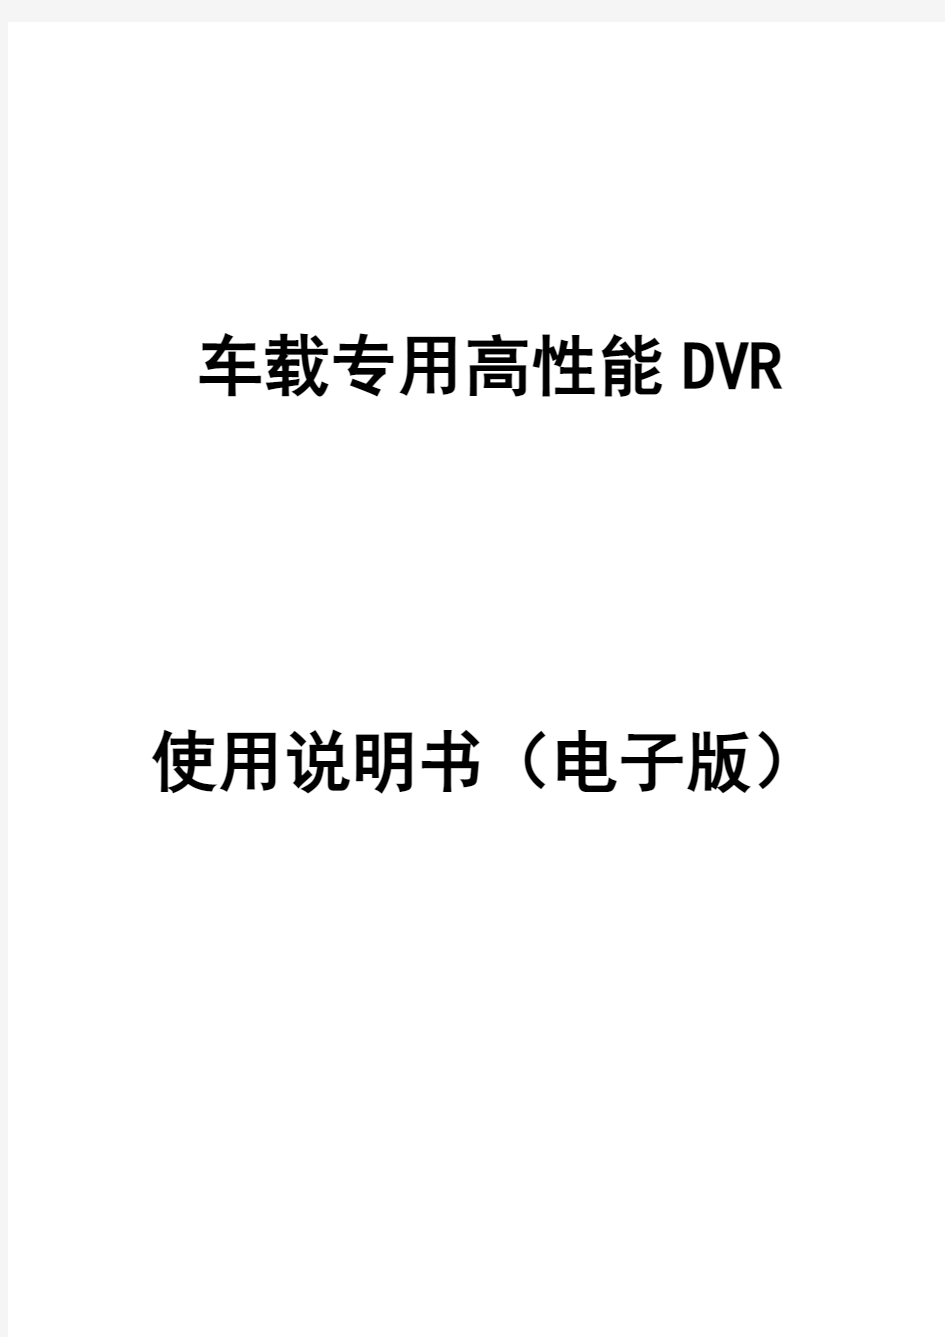 车载DVR说明书V3.0(中文版)